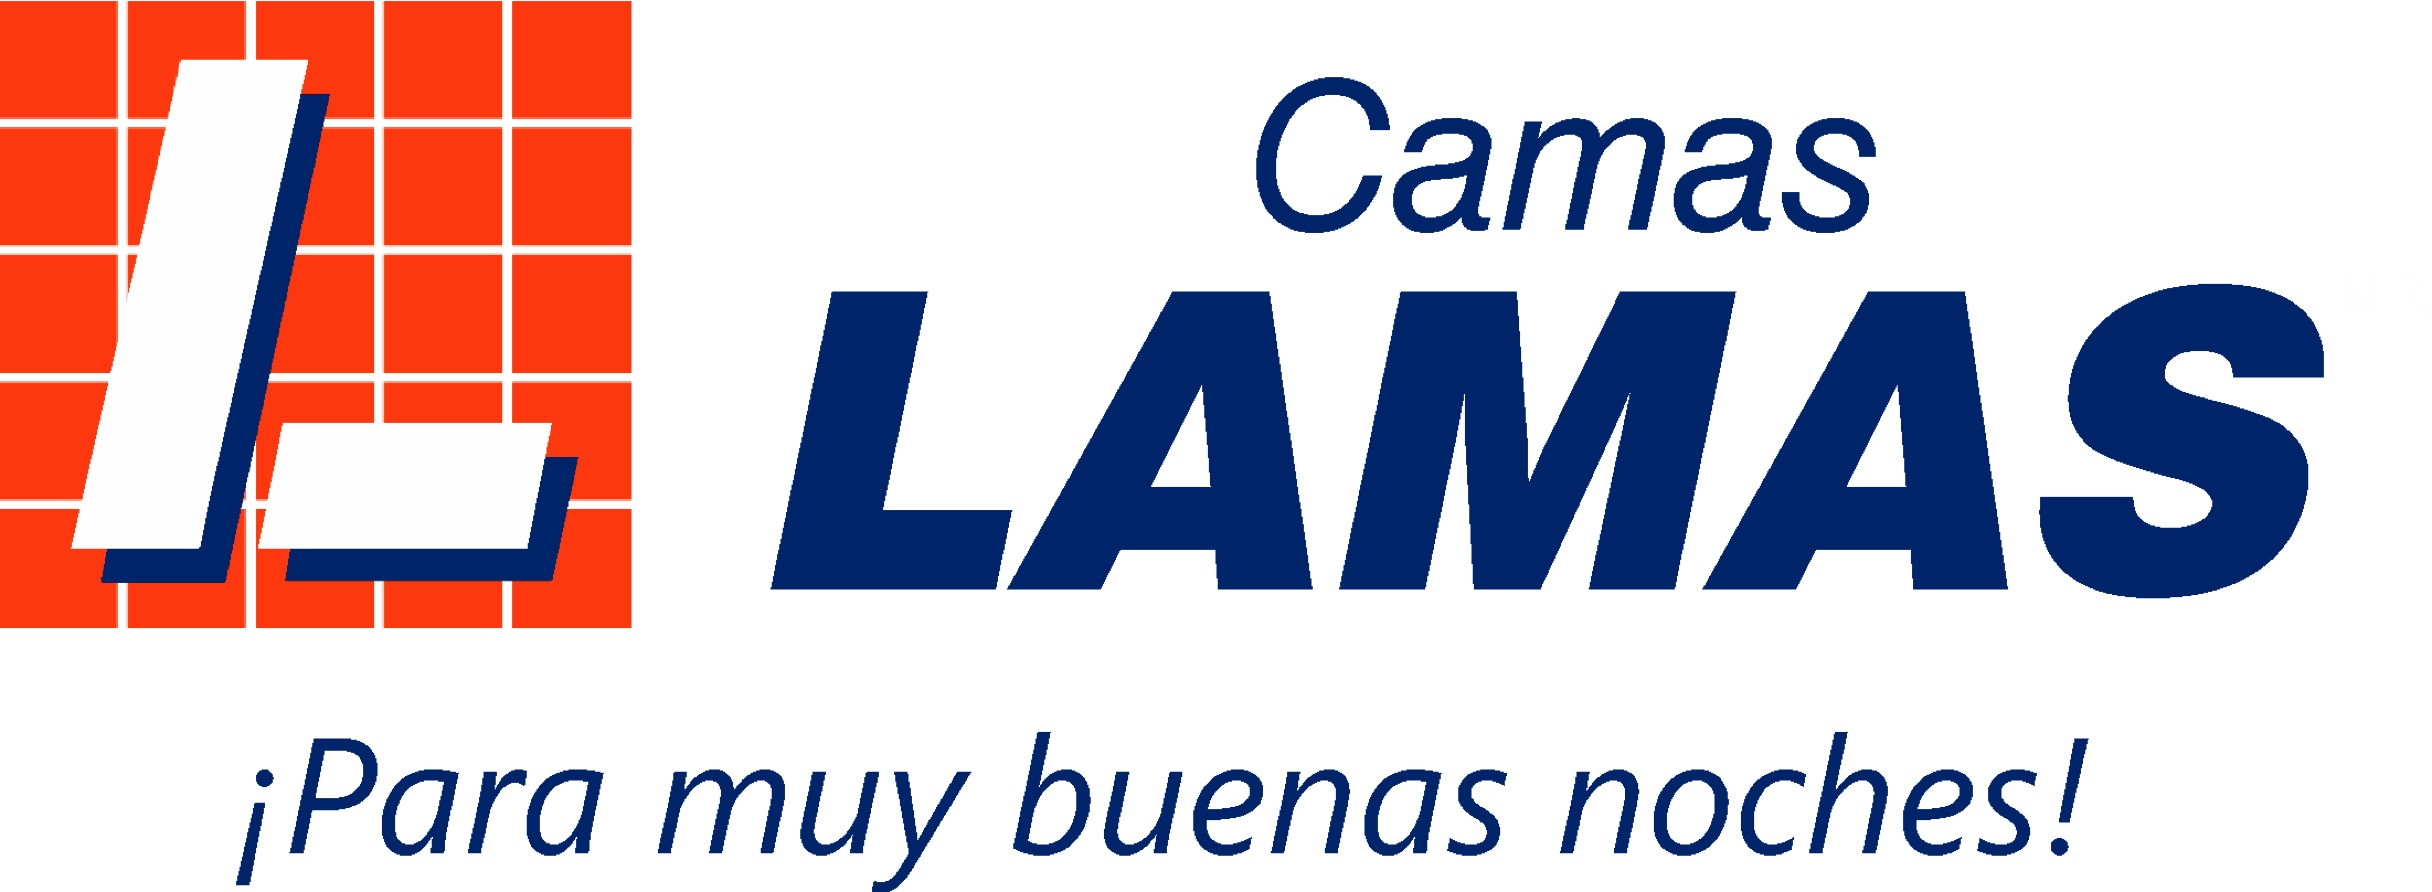 Rodrigo Berganza and Camas Lamas website